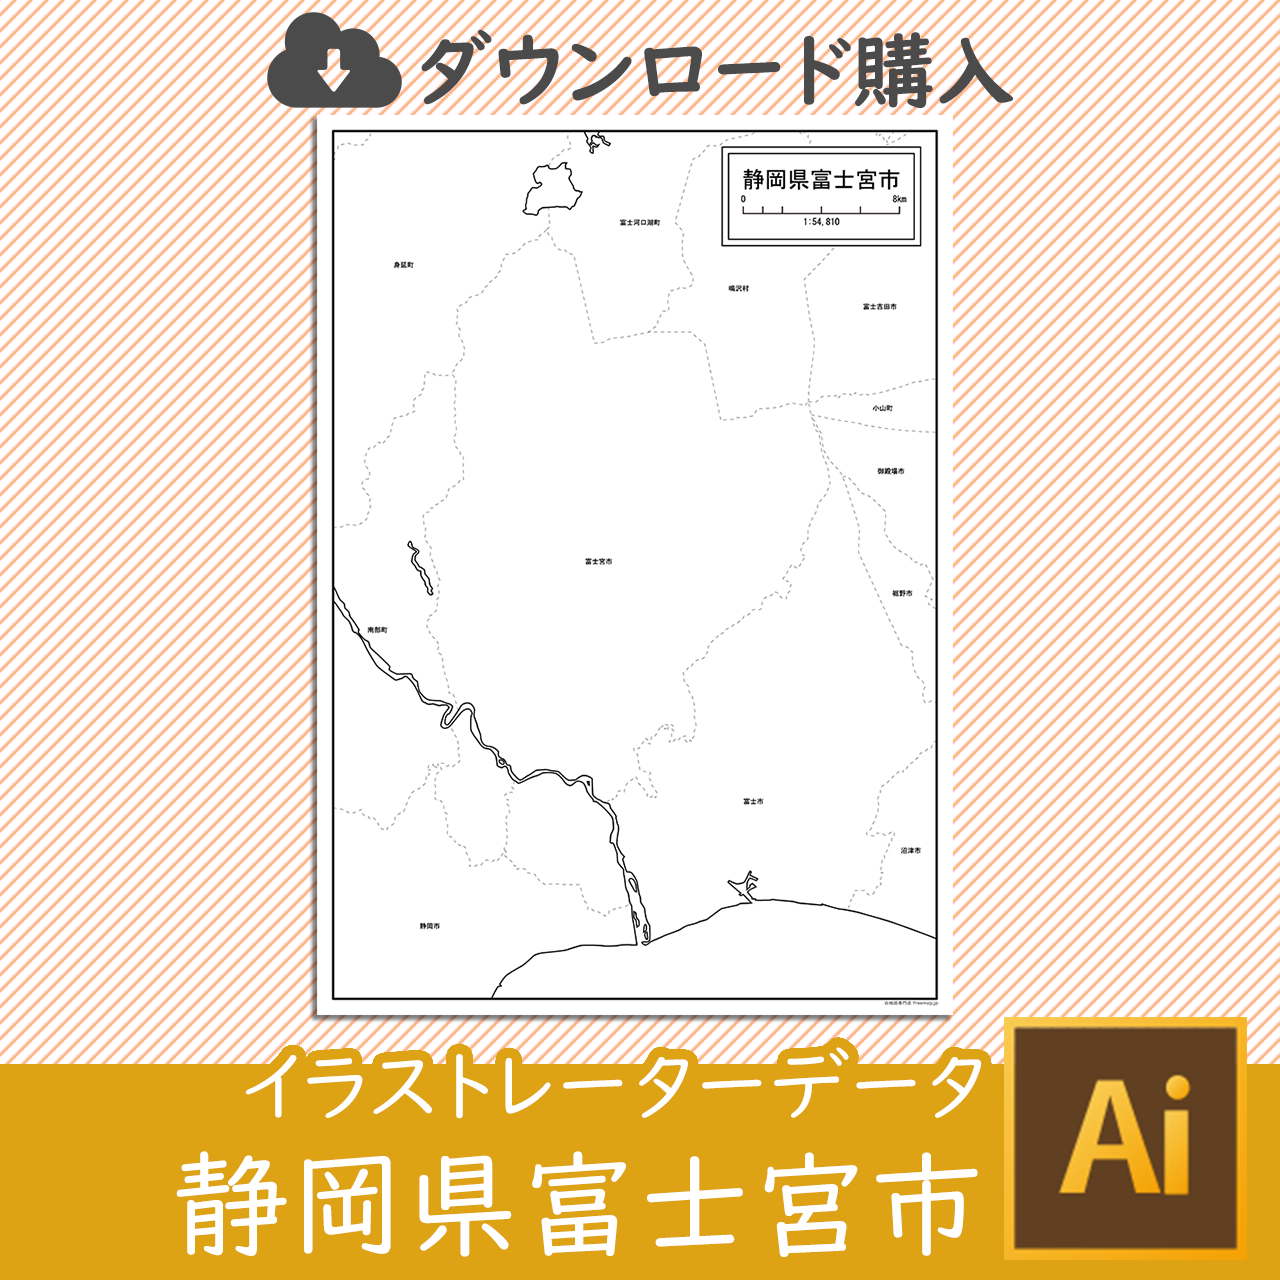 富士宮市のaiデータのサムネイル画像